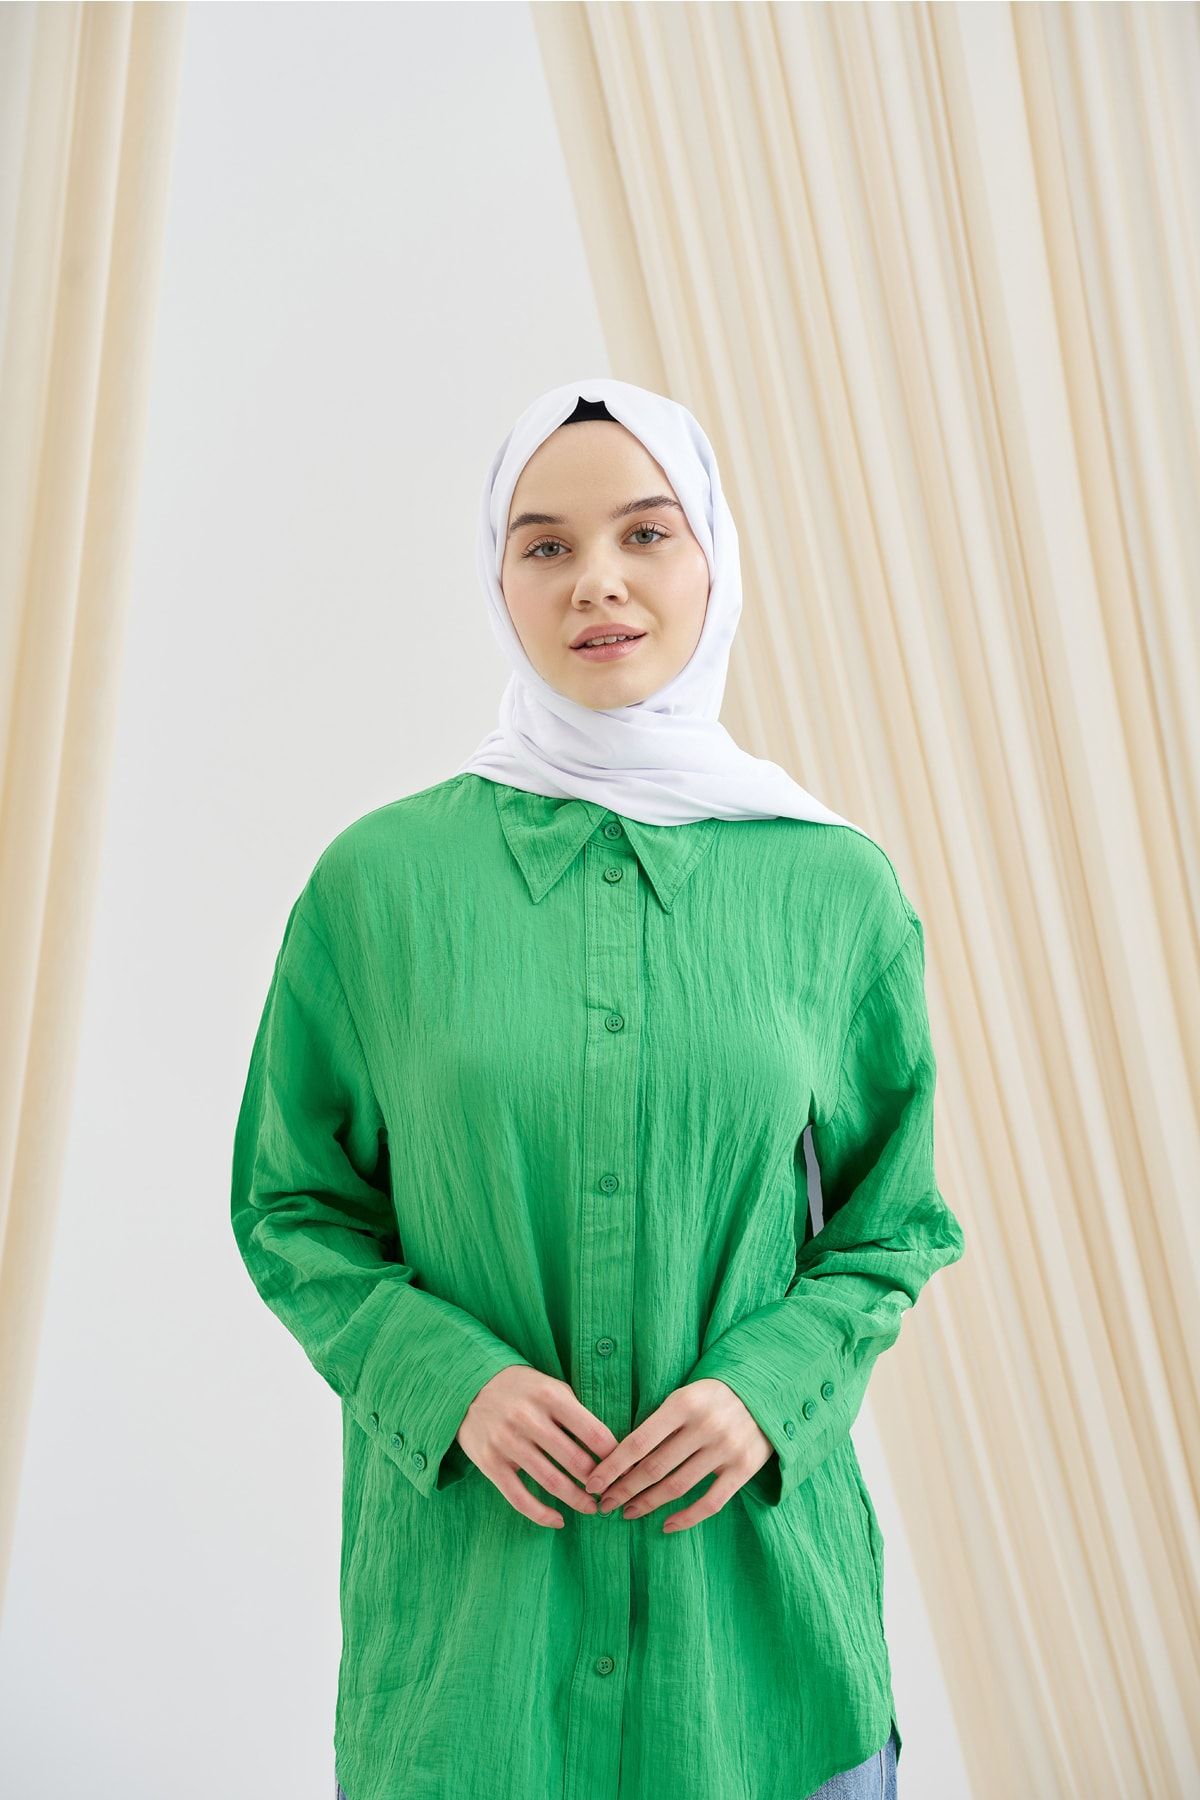 ARMANDA Yeni Sezon Grafik Desen Şal - Perla Serisi Minimal Desen Şık Şal Başörtü Hijab Scarf